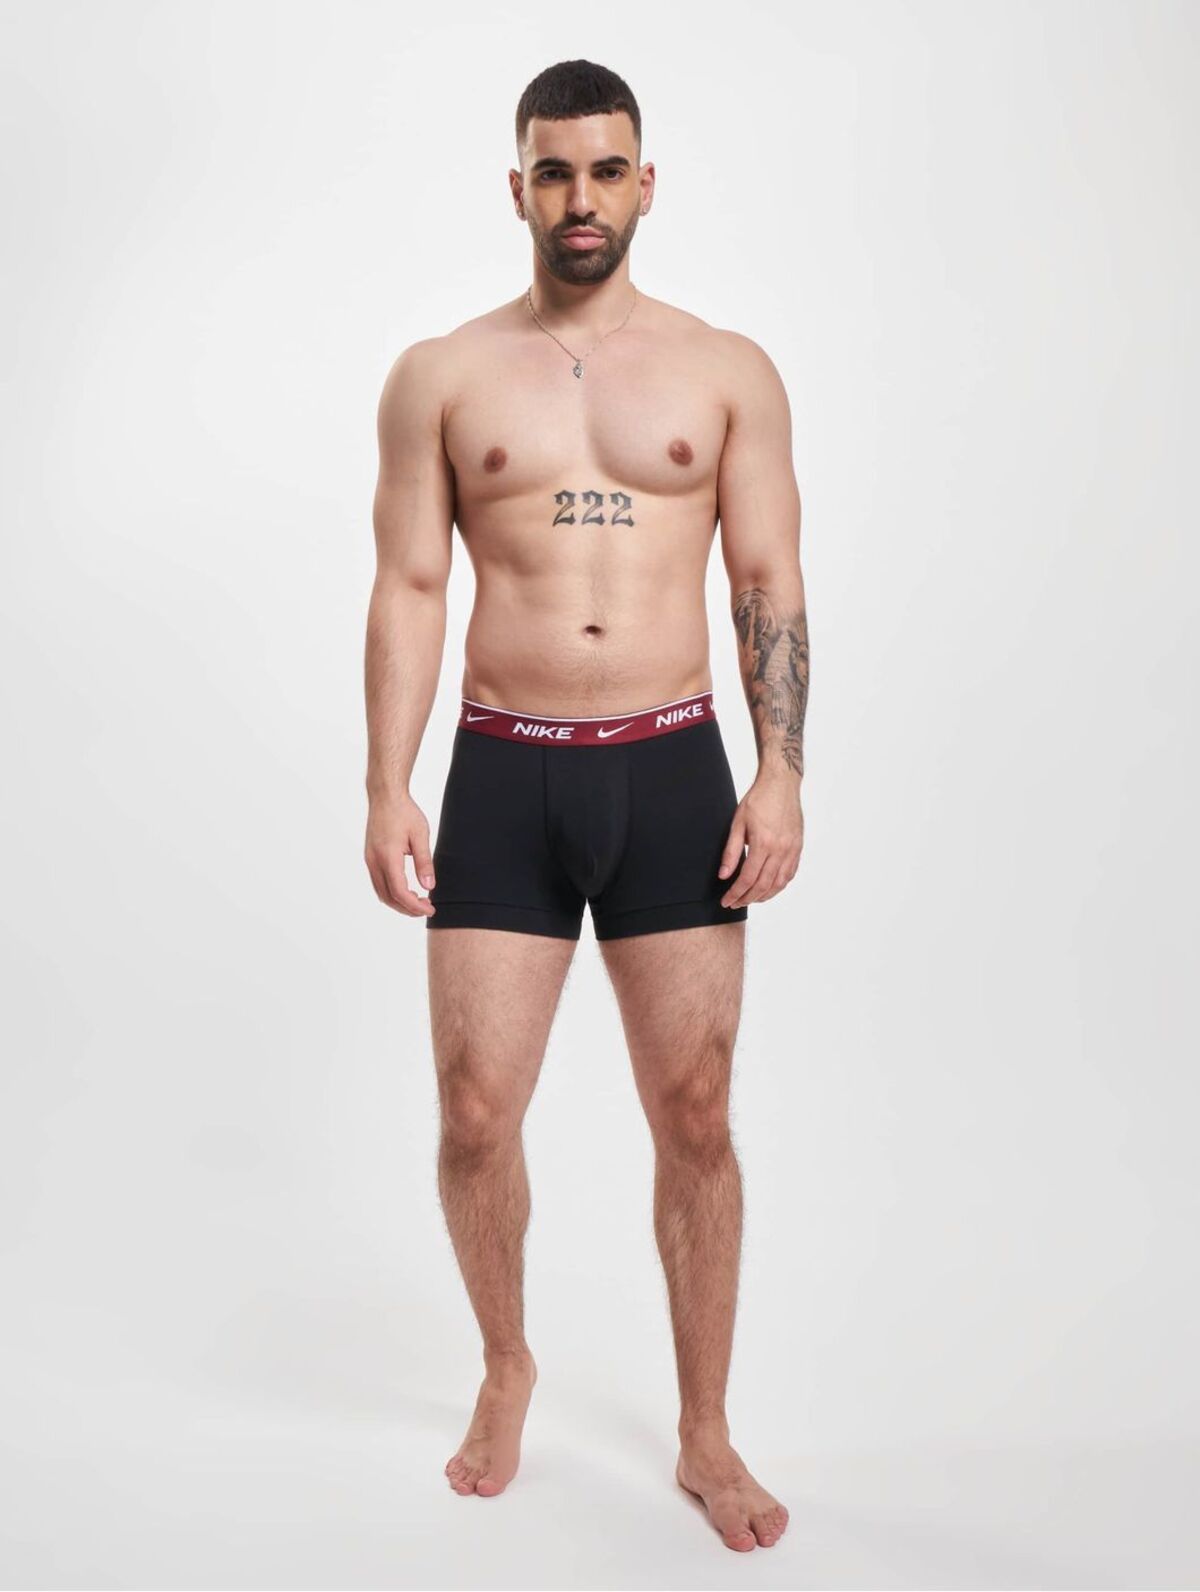 Nike Erkek Nike Marka Logolu Elastik Bantlı Günlük Kullanıma Uygun Siyah Boxer 0000ke1008-c4r